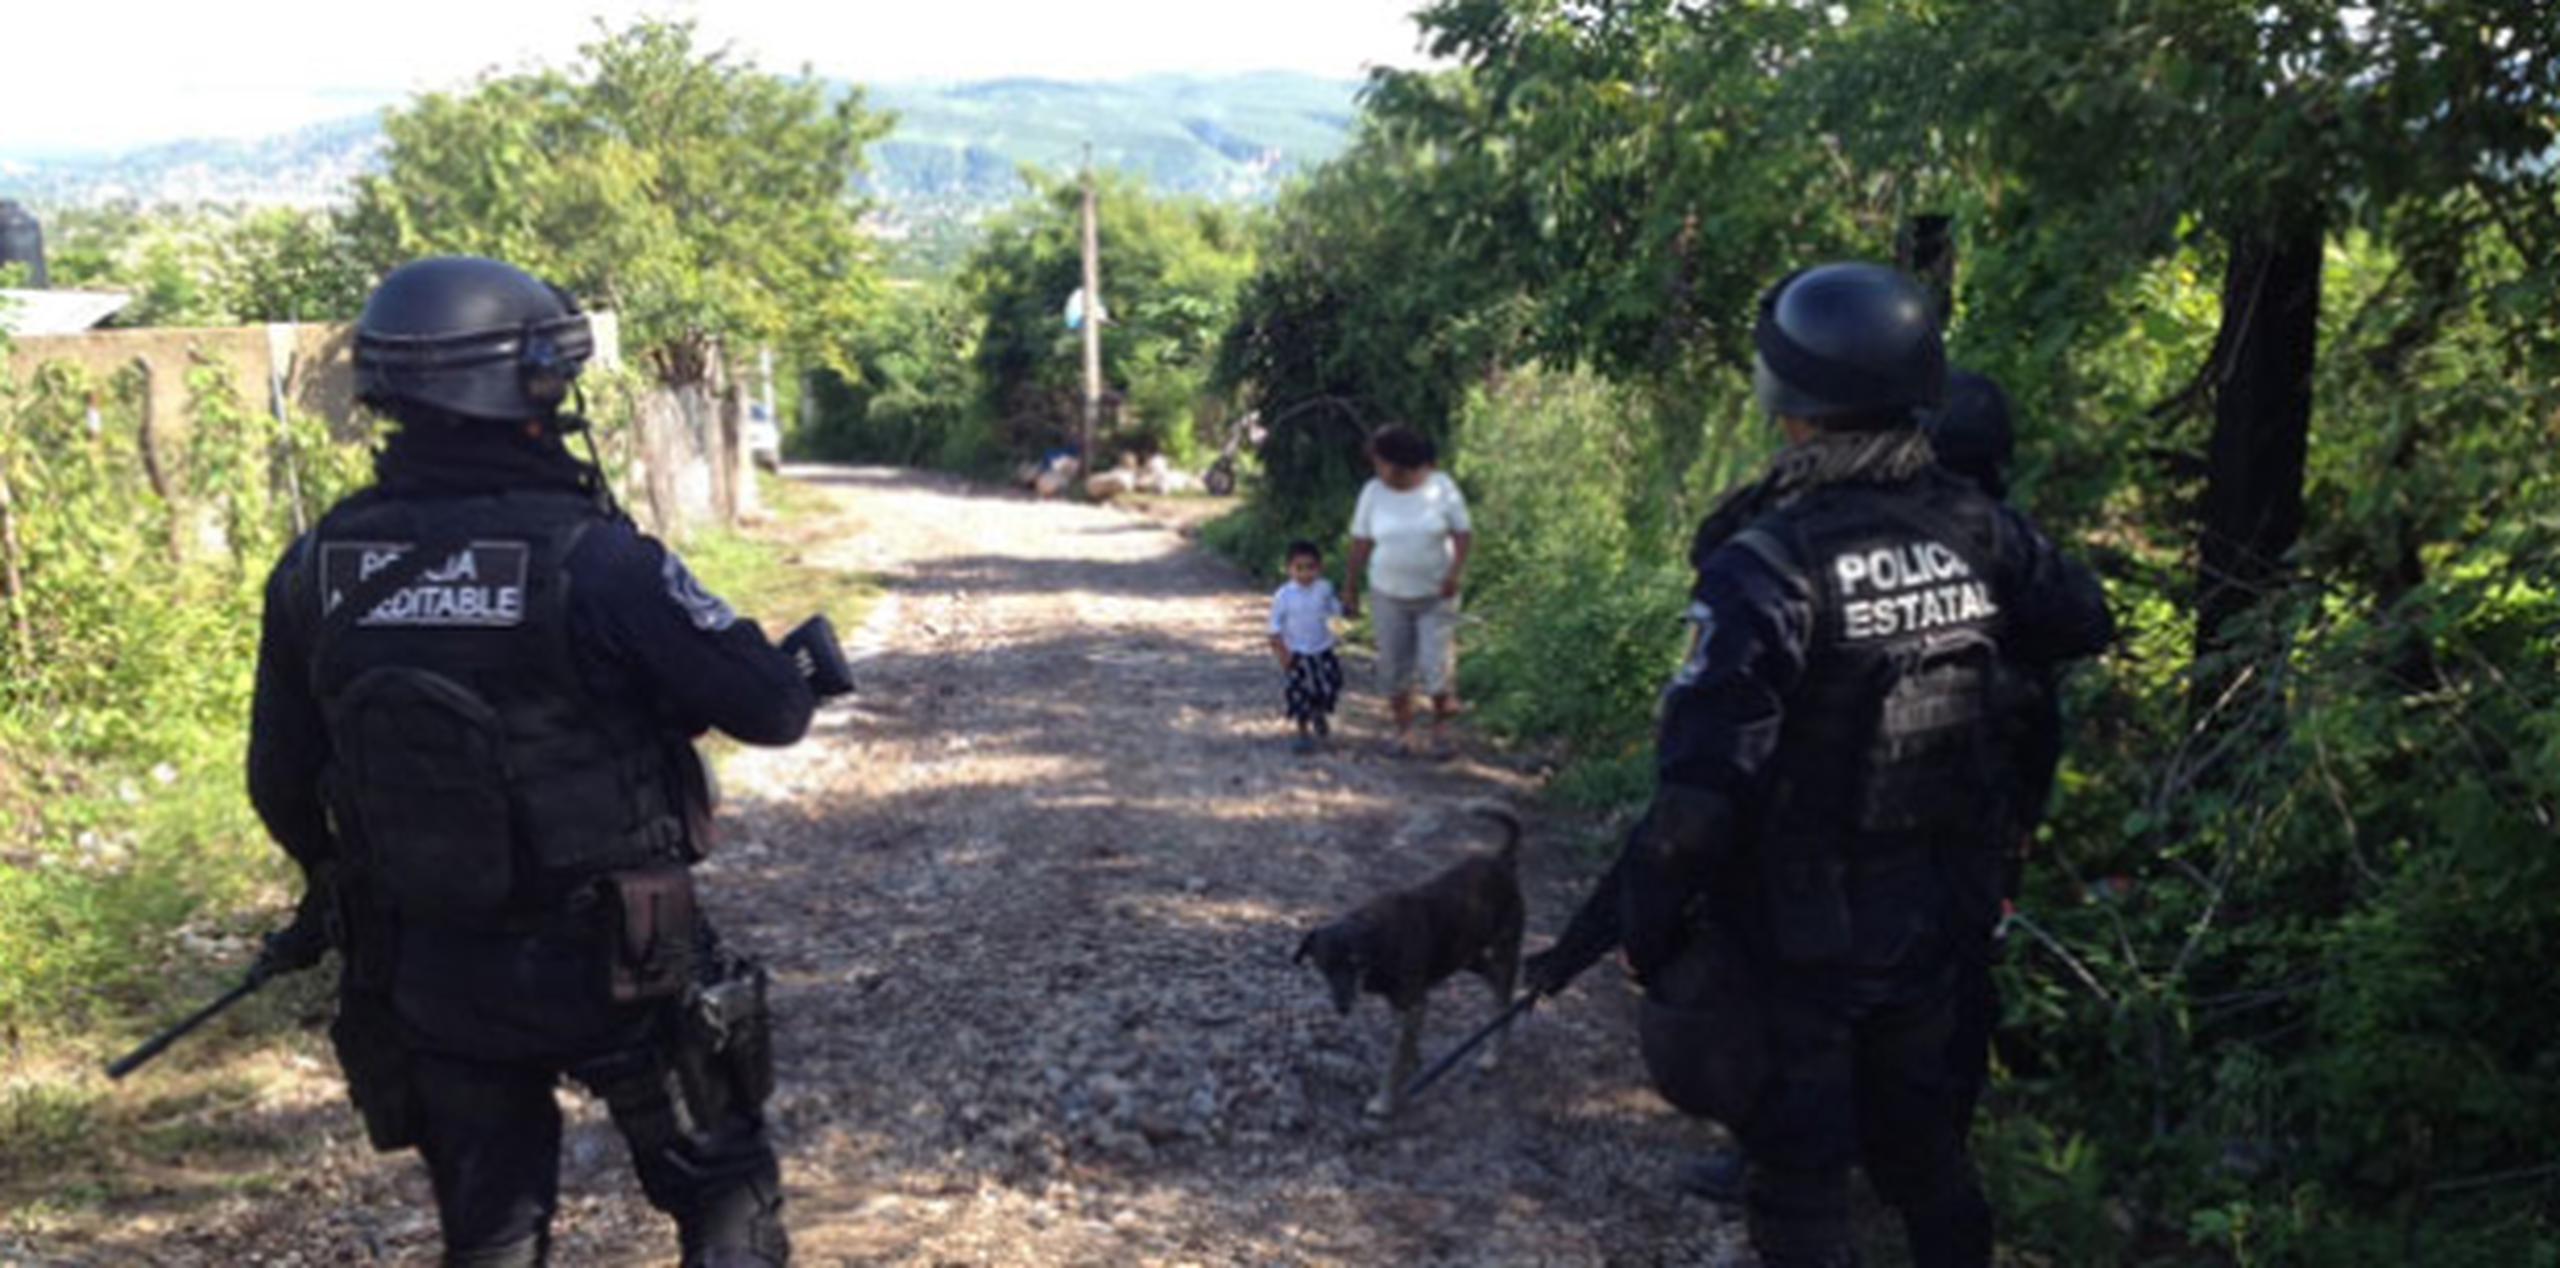 La fosa se encontró en un barranco alejado de la zona urbana de Iguala, en donde están trabajando elementos de la Marina y la policía ministerial del estado de Guerrero.(EFE)